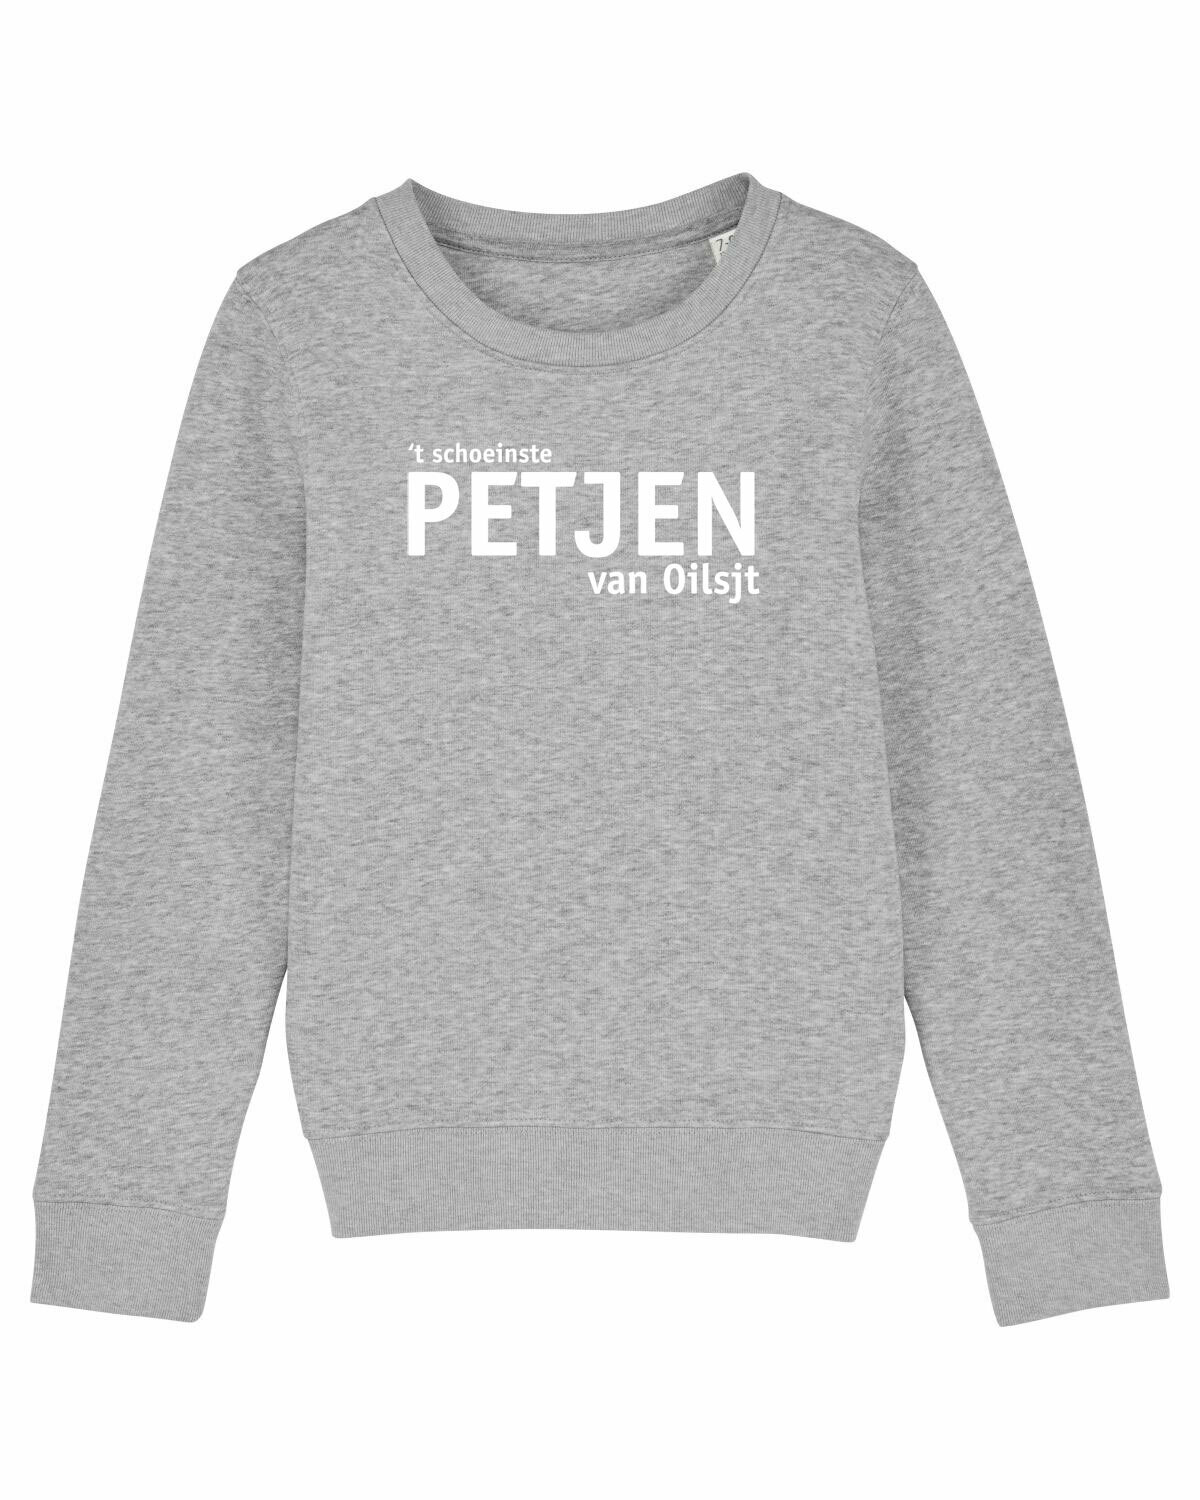 Kids Sweater Petjen